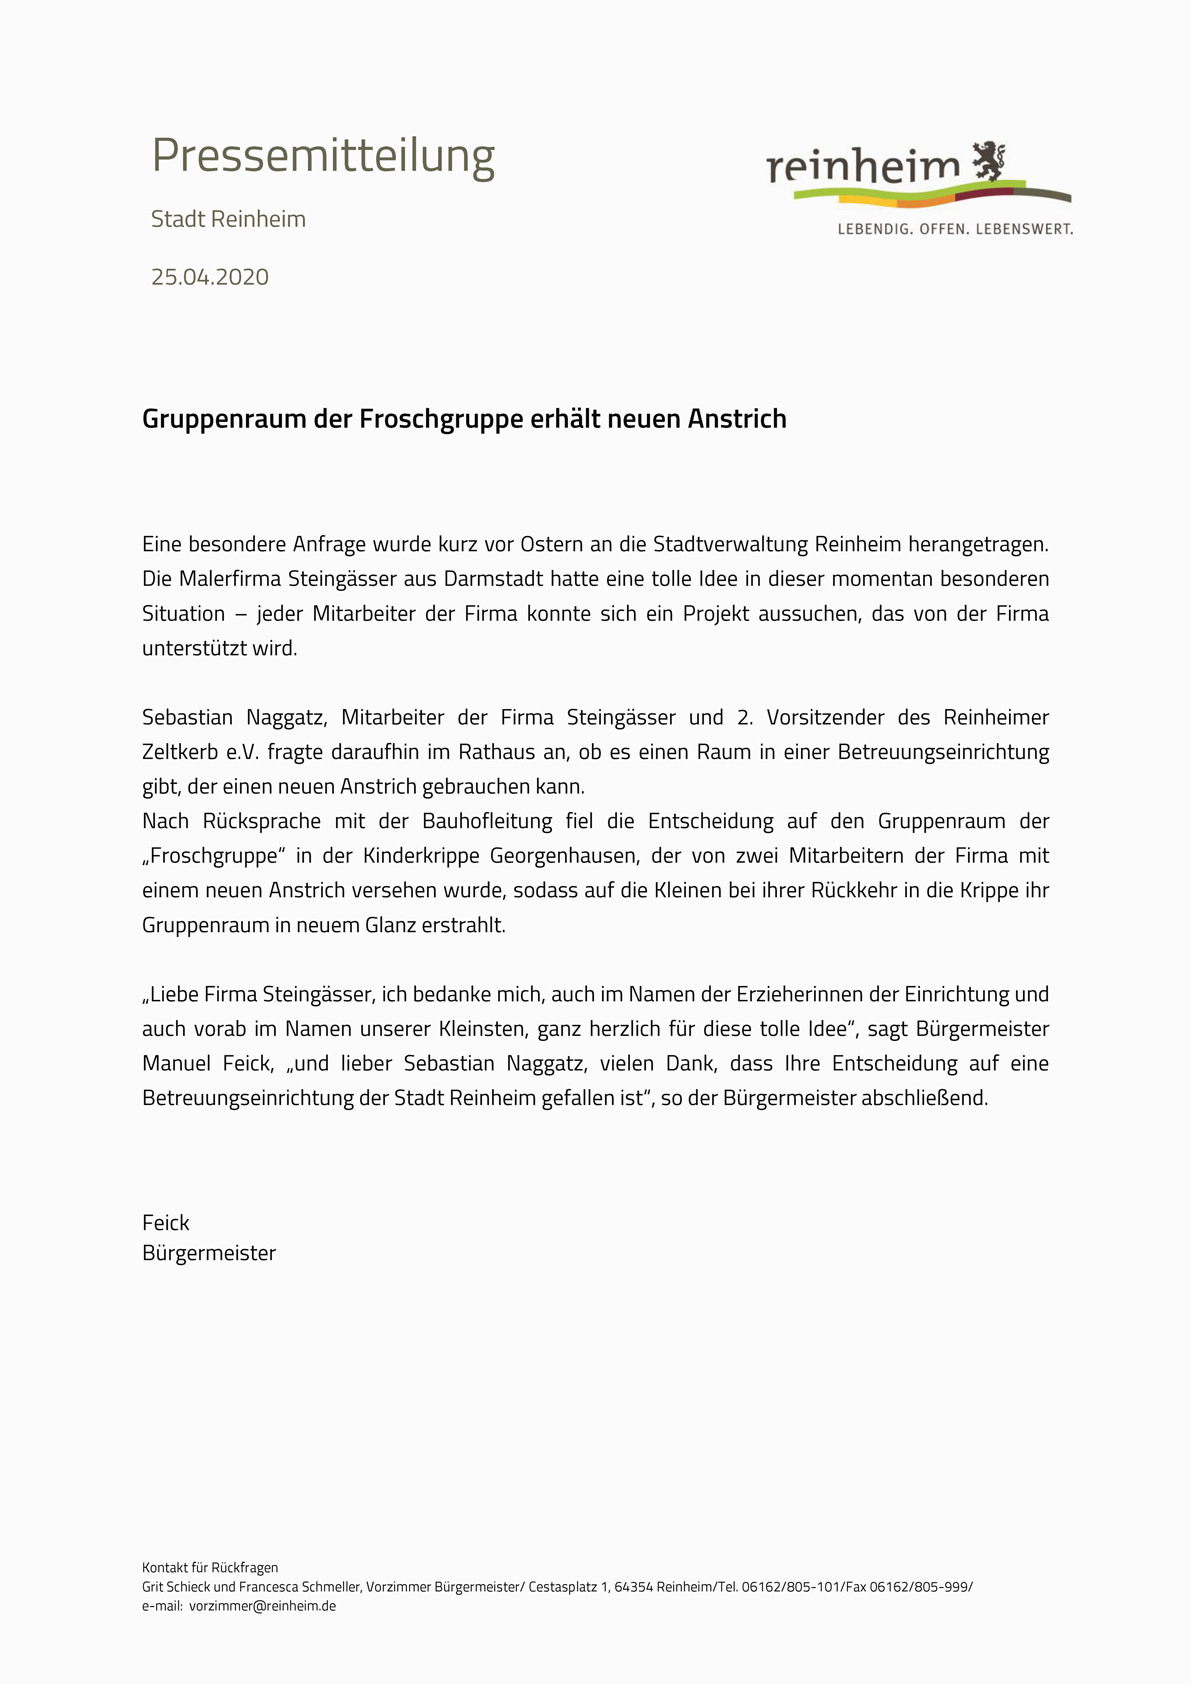 Offizielle Pressemitteilung der Stadt Reinheim zum Hilfsprojekt der Firma Steingässer inklusive Danksagung des Bürgermeisters